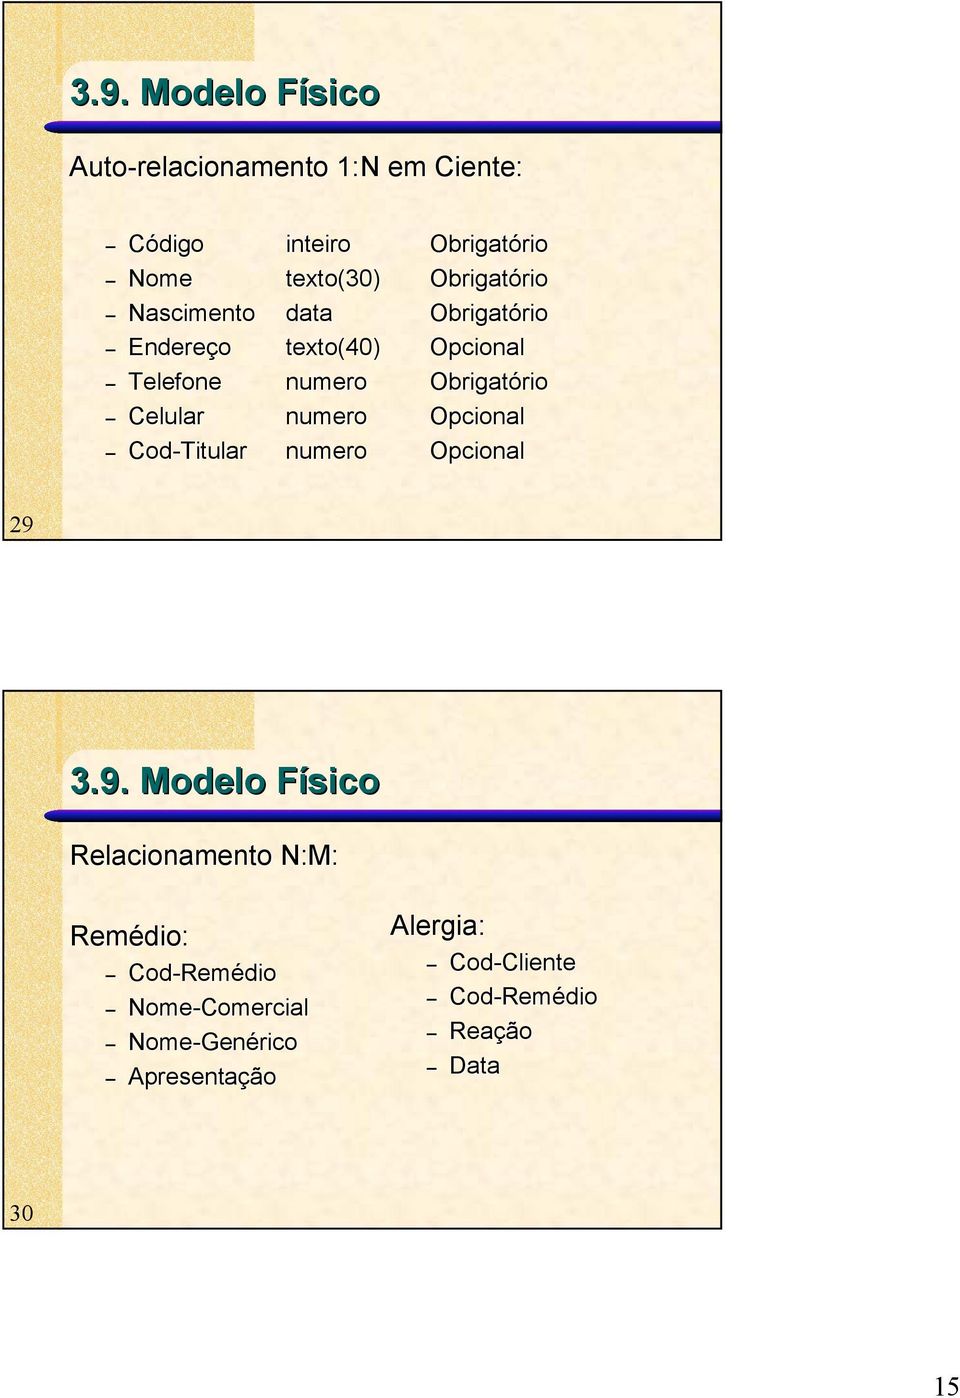 3.9. Modelo Físico Relacionamento N:M: Remédio: Cod-Remédio Nome-Comercial